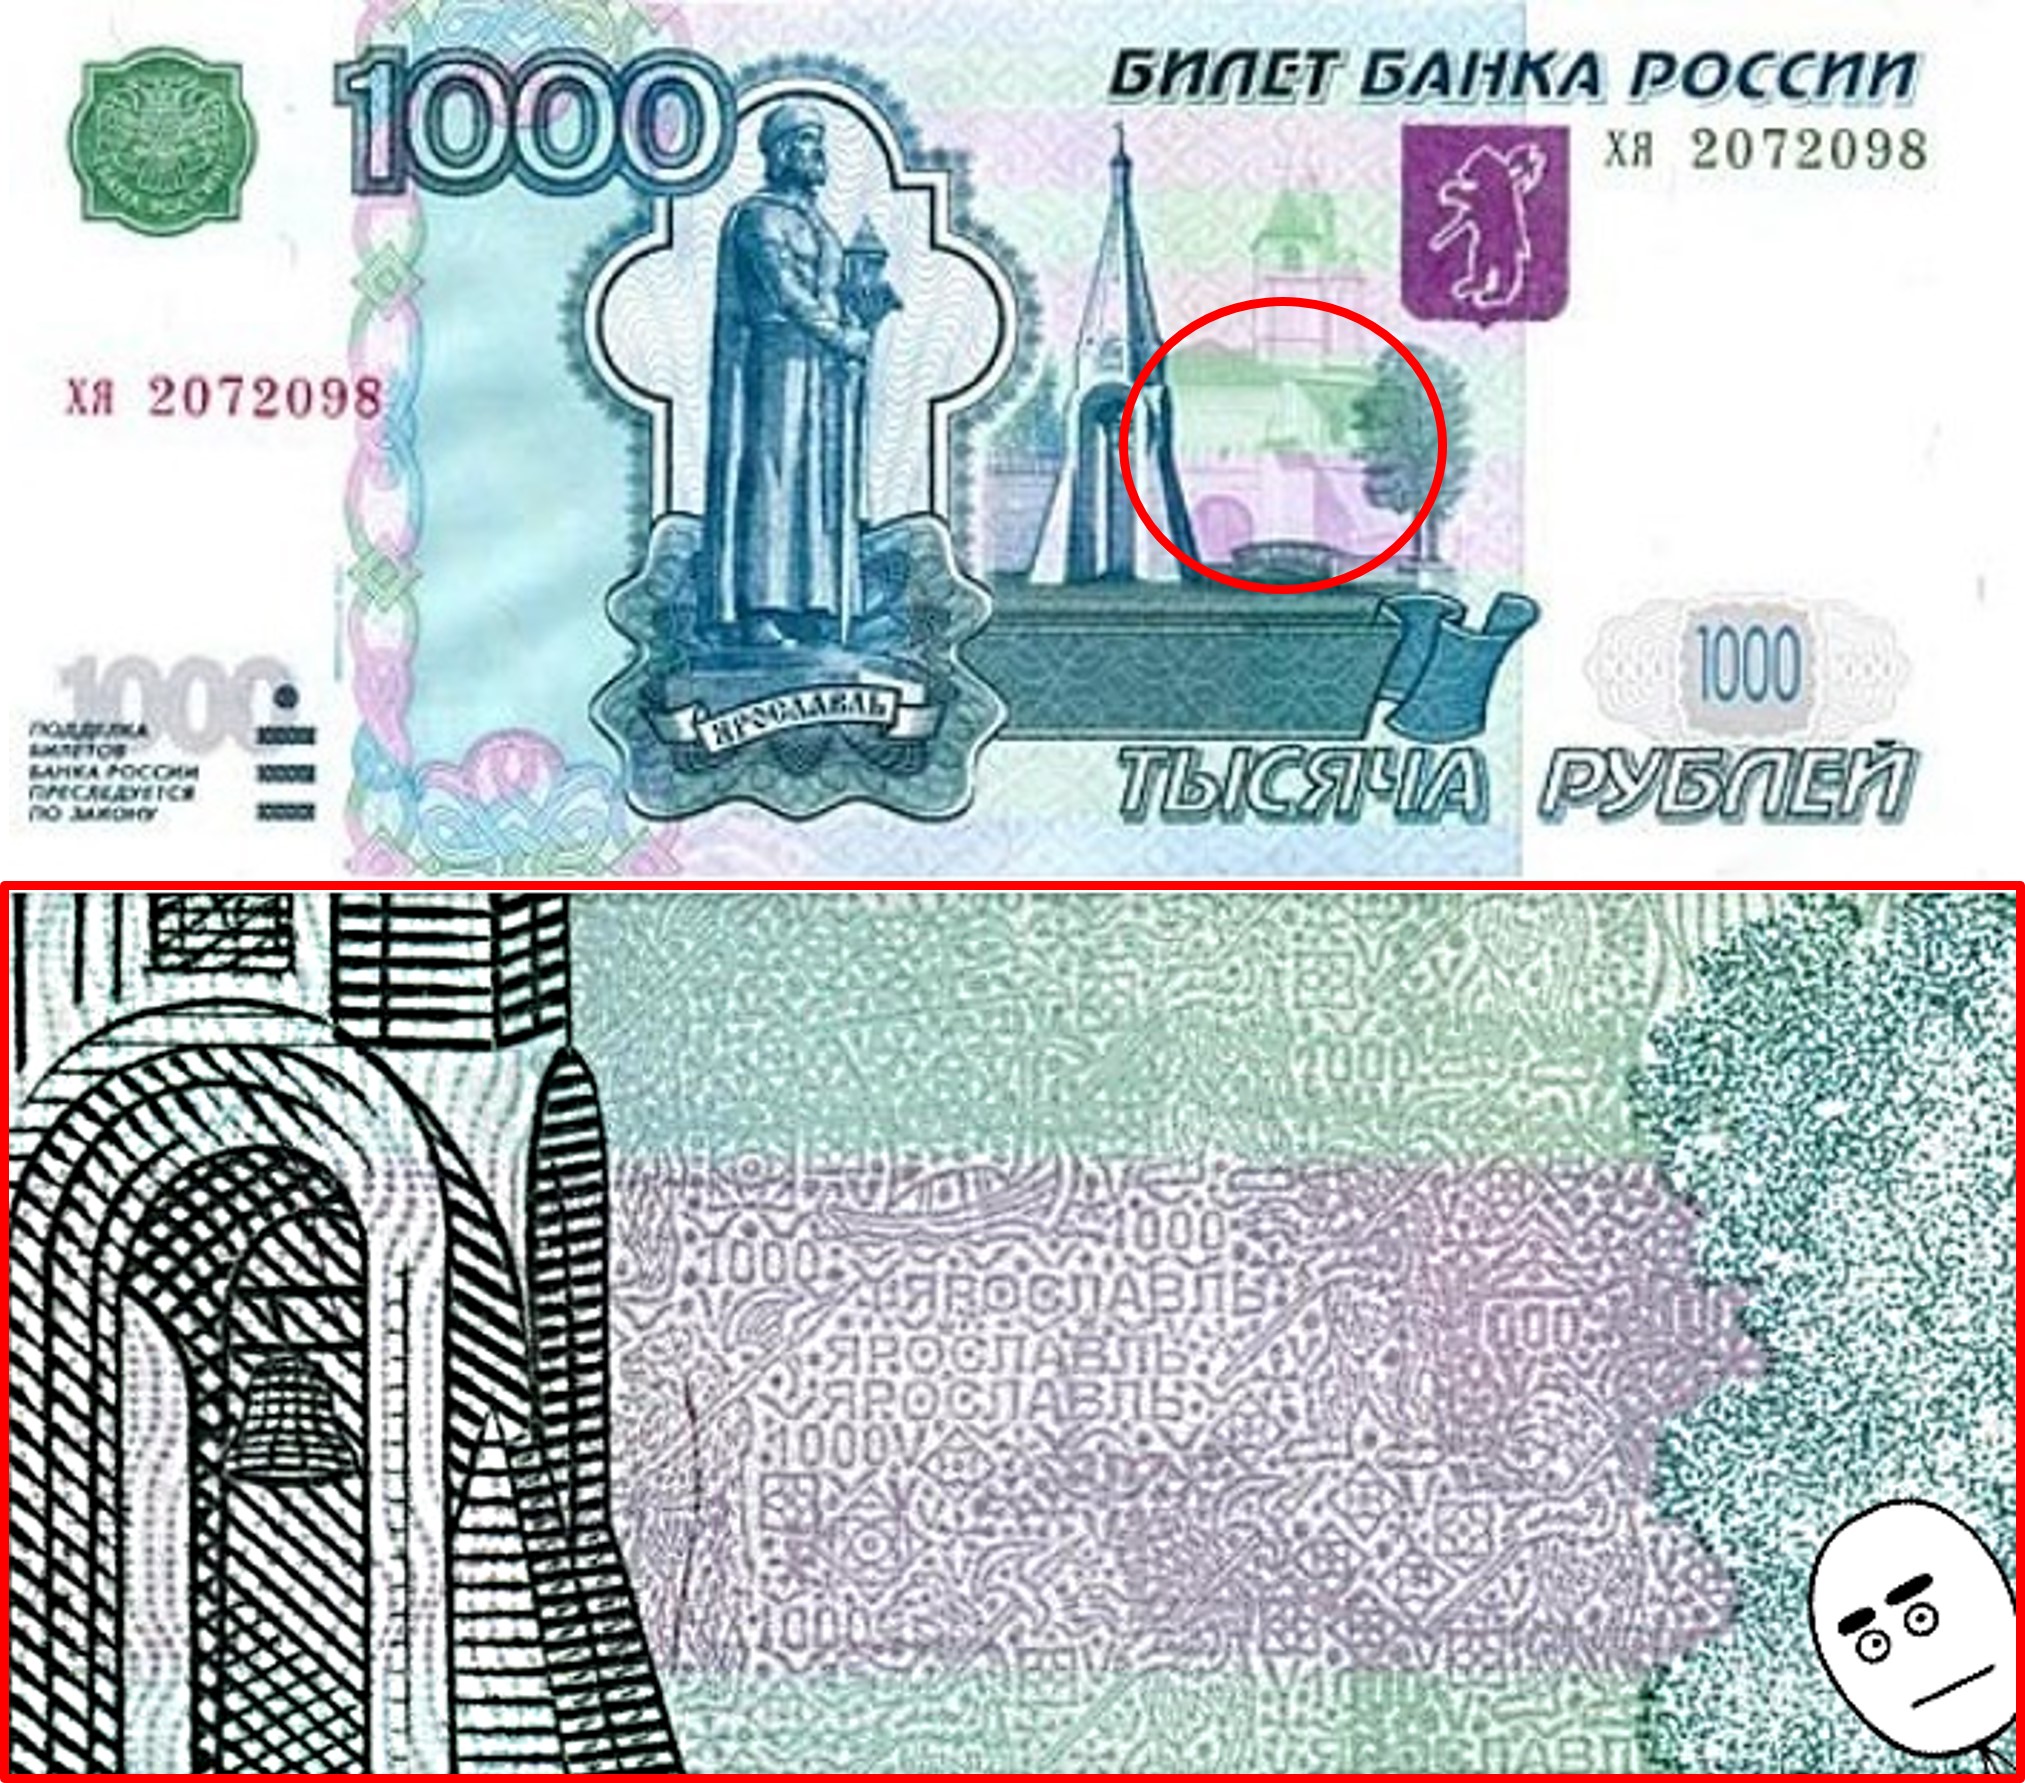 Найди купюру. Купюра 1000 рублей. Банкнота 1000 рублей. Изображения на банкнотах. Символ купюры.